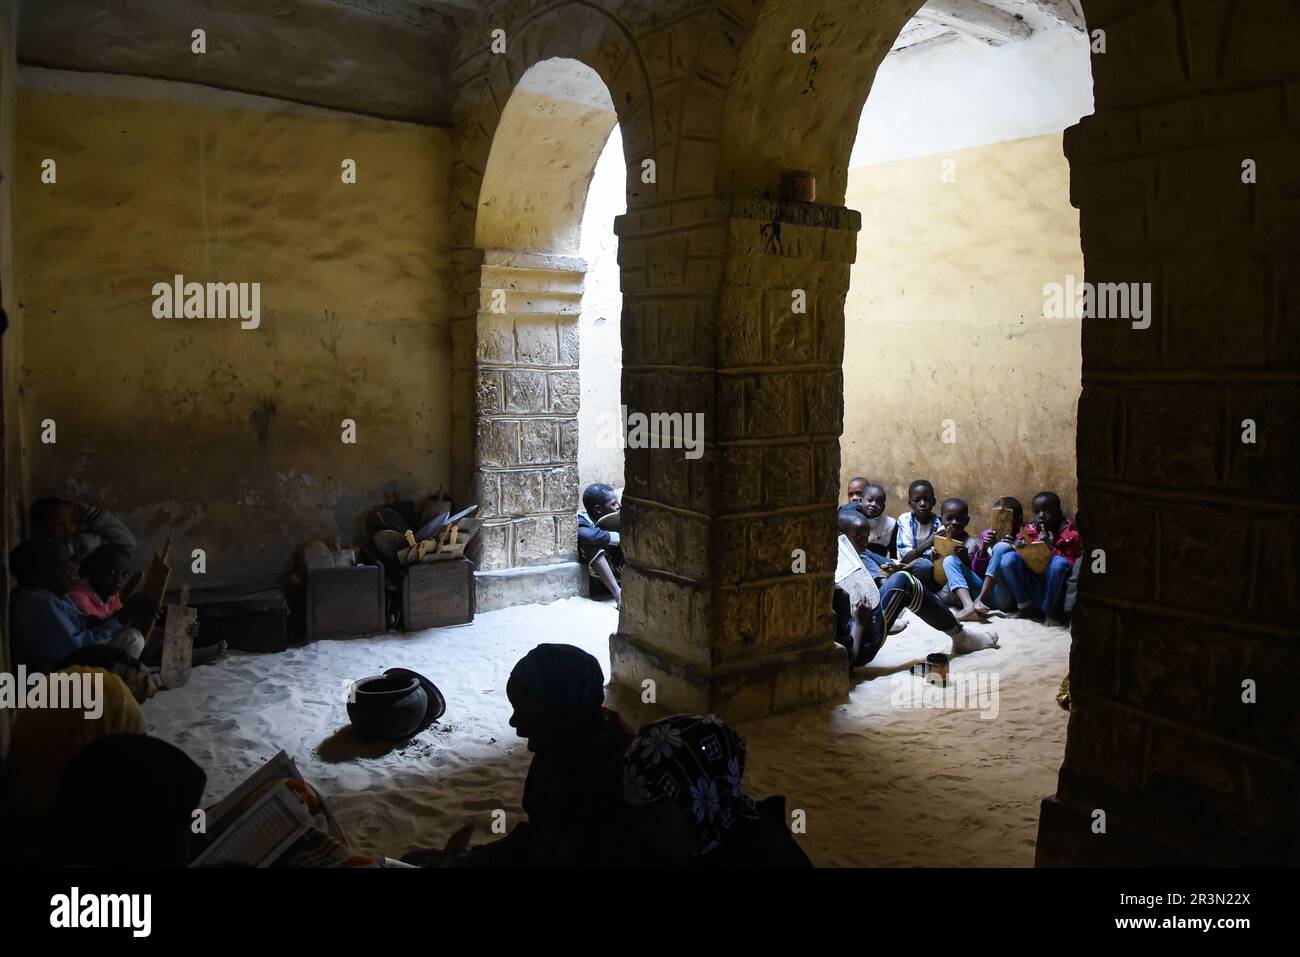 Nicolas Remene / le Pictorium - Baba El Hadj, un giovane scolaro a Timbuktu, Mali. 18/1/2020 - Mali / Tombouctou (Timbuktu) / Tombouctou (Timbuk Foto Stock